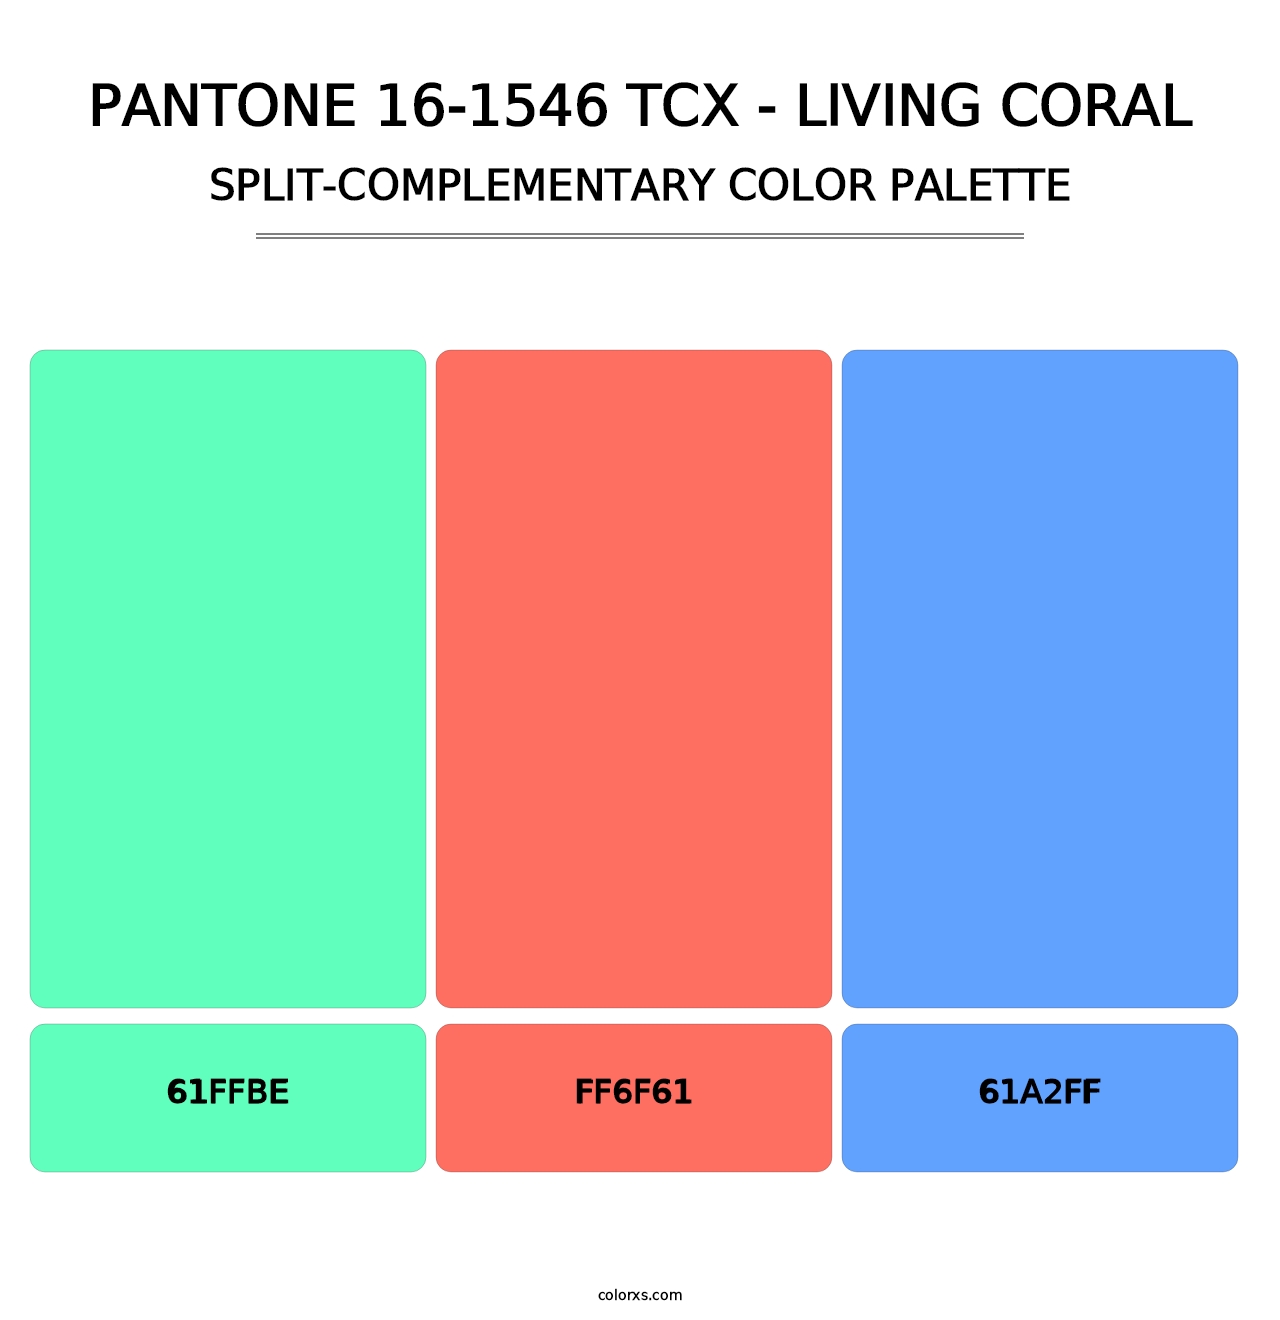 PANTONE 16-1546 TCX - Living Coral - Split-Complementary Color Palette